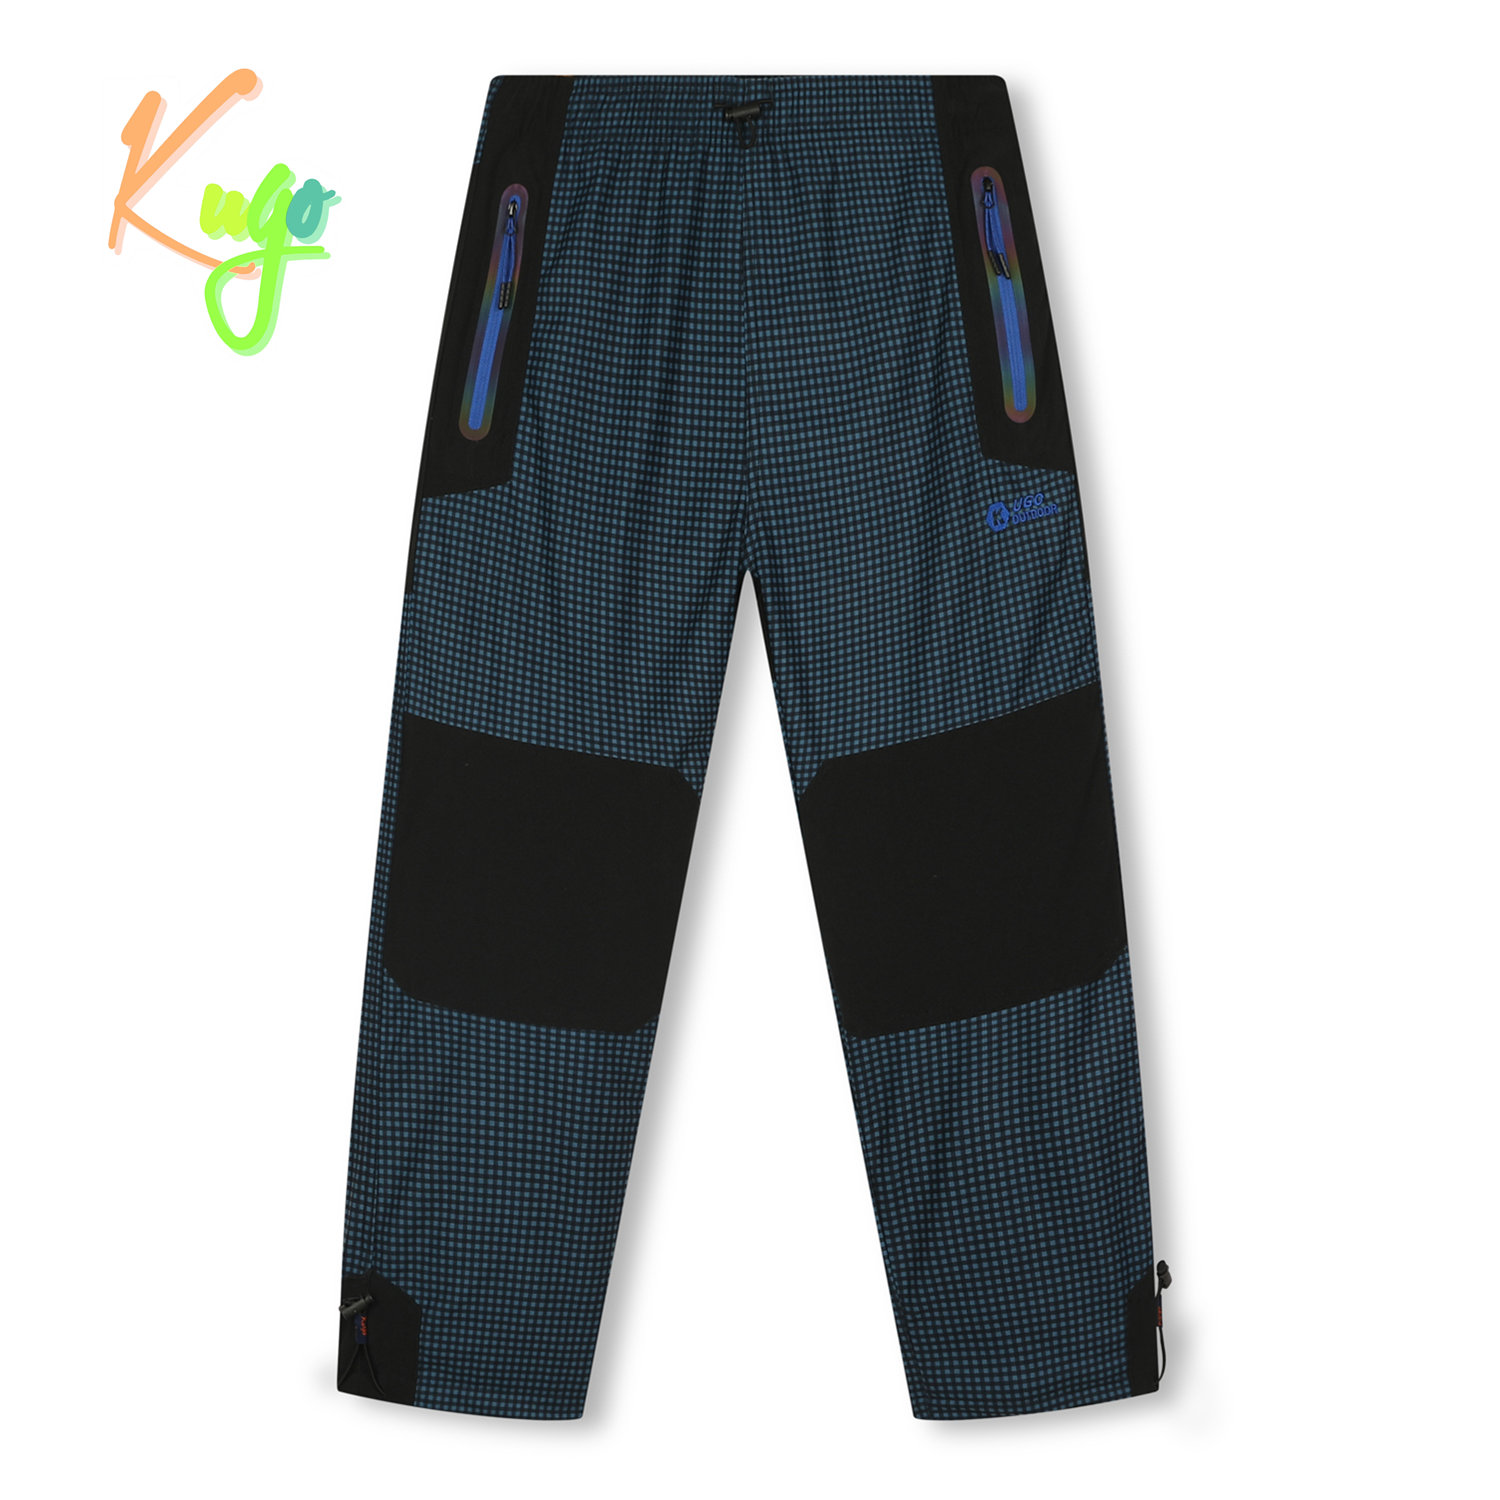 Chlapecké zateplené outdoorové kalhoty - KUGO C7775, petrol/ modré zipy Barva: Petrol, Velikost: 146